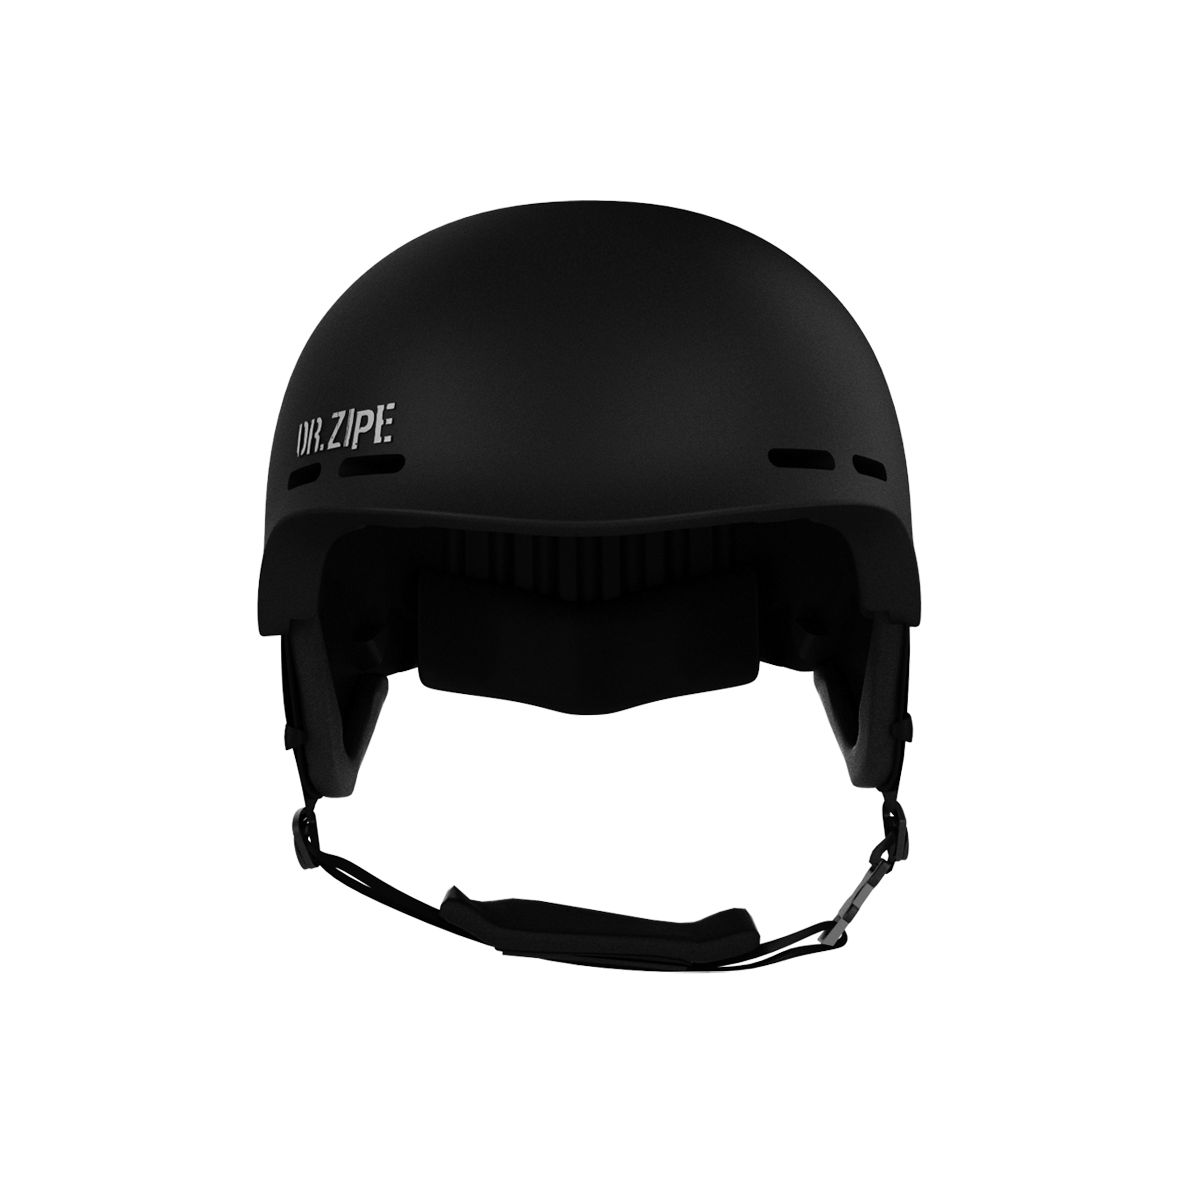  Ski Helmet	 -  dr. zipe Armor helmet Level IV